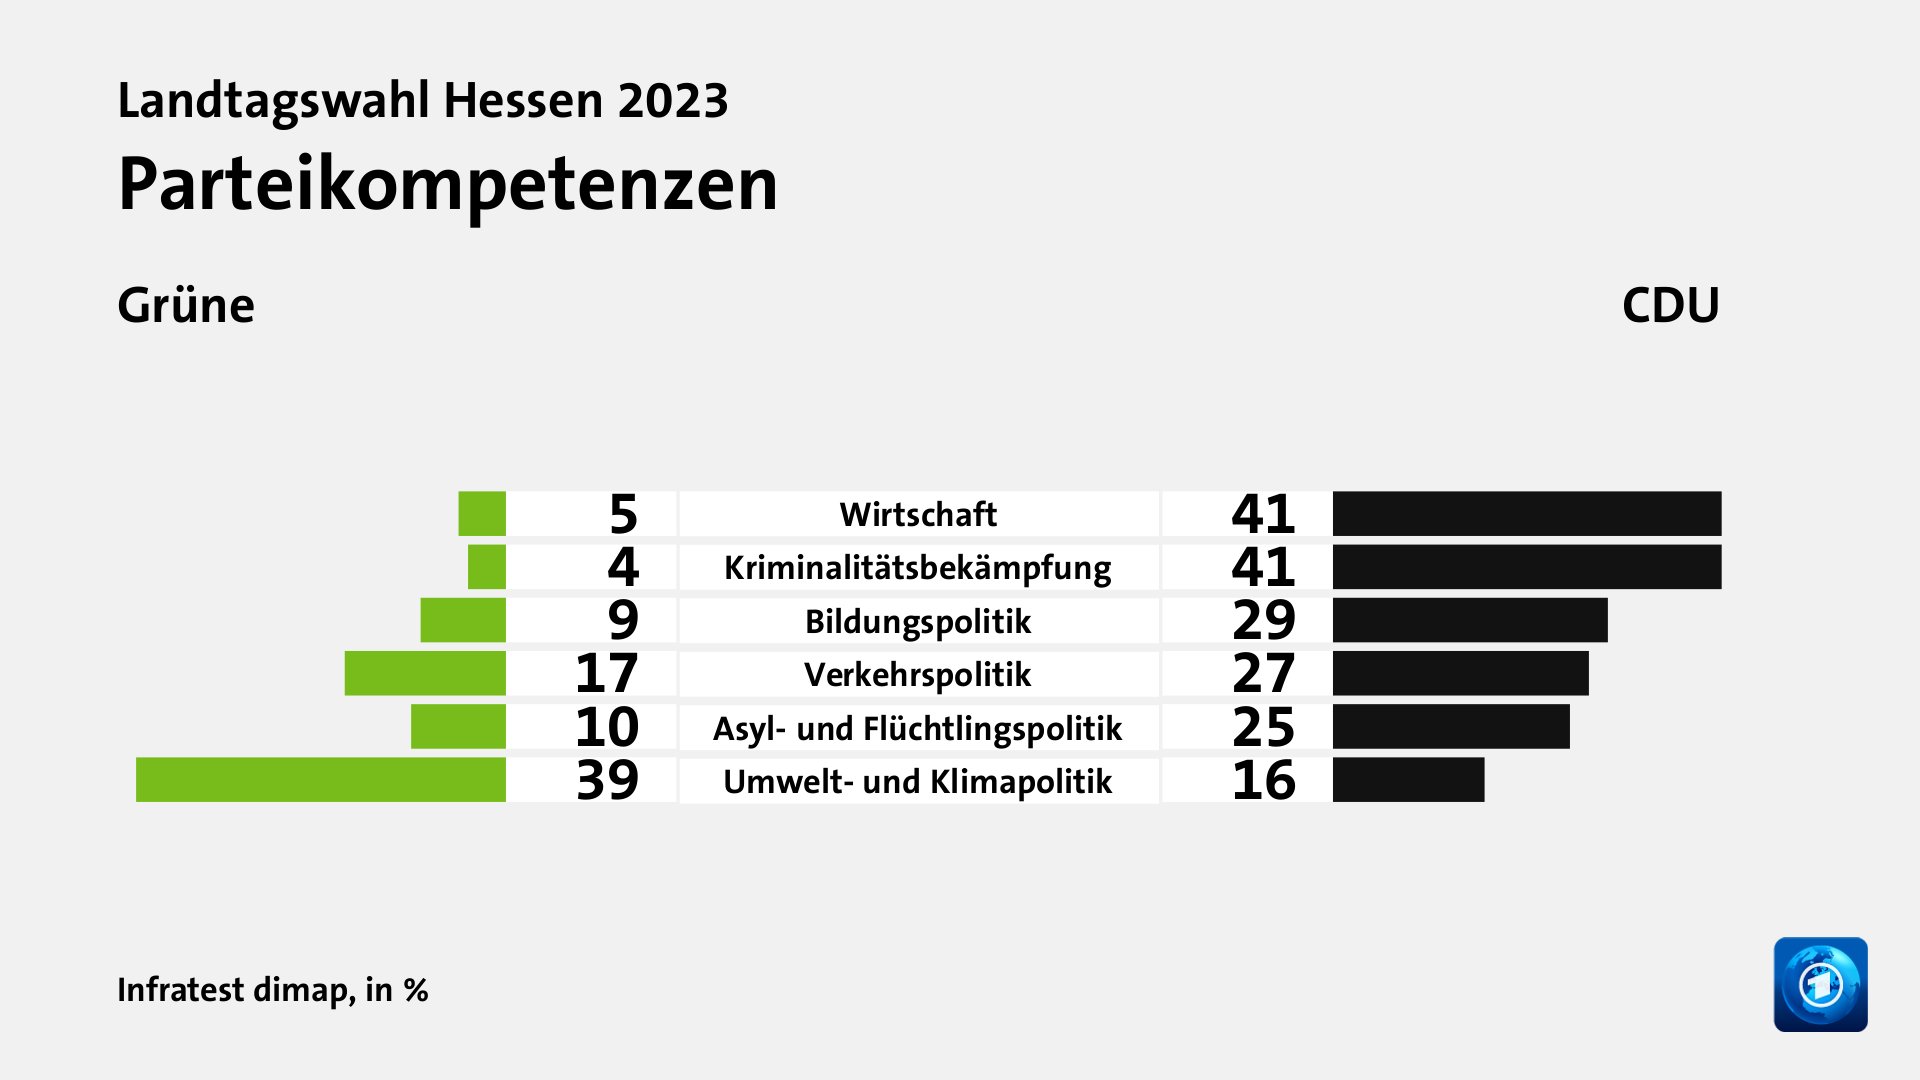 Parteikompetenzen (in %) Wirtschaft: Grüne 5, CDU 41; Kriminalitätsbekämpfung: Grüne 4, CDU 41; Bildungspolitik: Grüne 9, CDU 29; Verkehrspolitik: Grüne 17, CDU 27; Asyl- und Flüchtlingspolitik: Grüne 10, CDU 25; Umwelt- und Klimapolitik: Grüne 39, CDU 16; Quelle: Infratest dimap